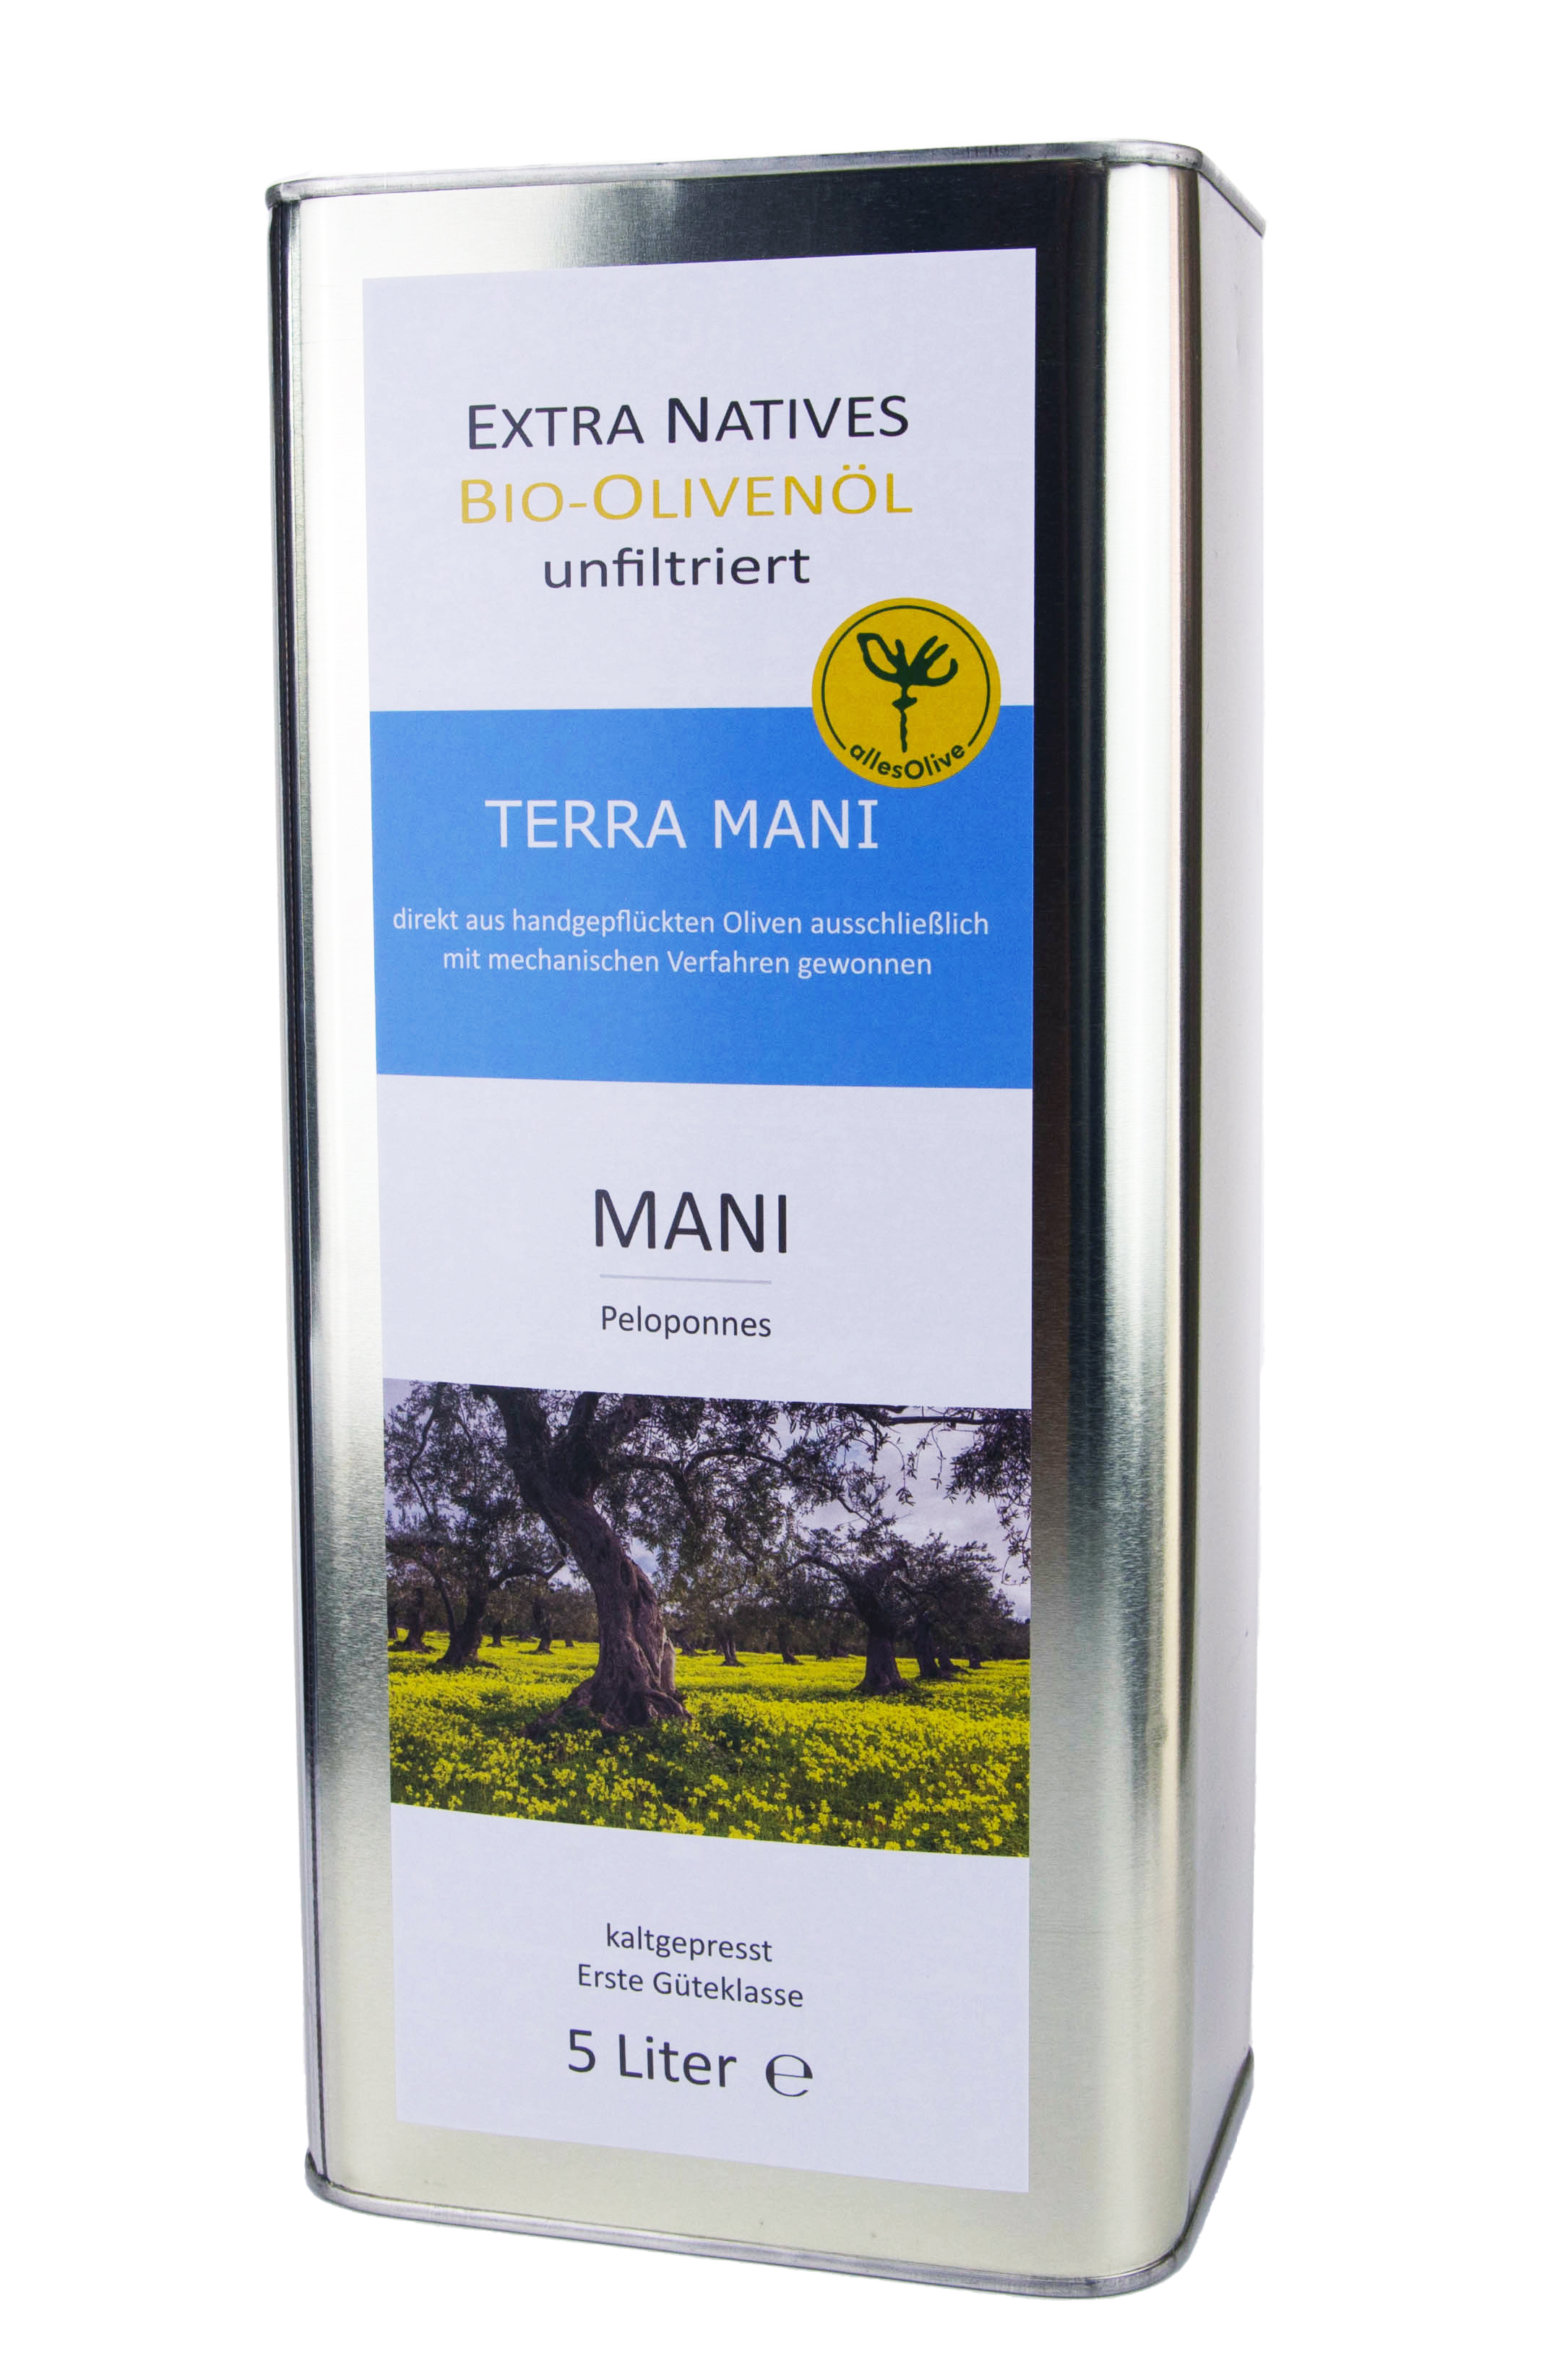 Aceite de oliva virgen extra orgánico y nativo TERRA-MANI, sin filtrar, en envase de 5L - bidón.